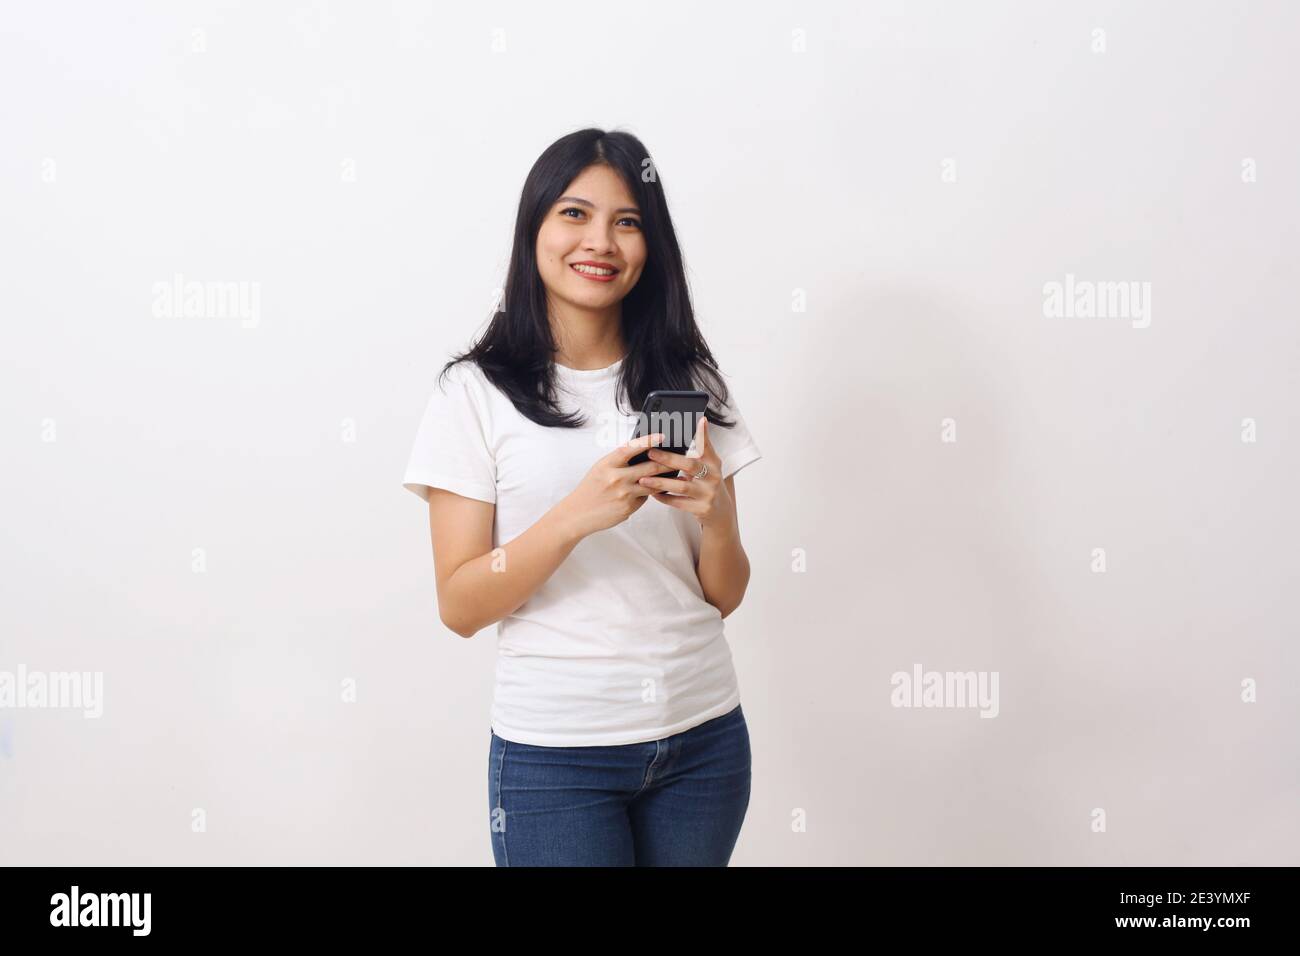 Ritratto di una ragazza asiatica felice che tiene il telefono cellulare e. guardando la telecamera isolata su sfondo bianco Foto Stock